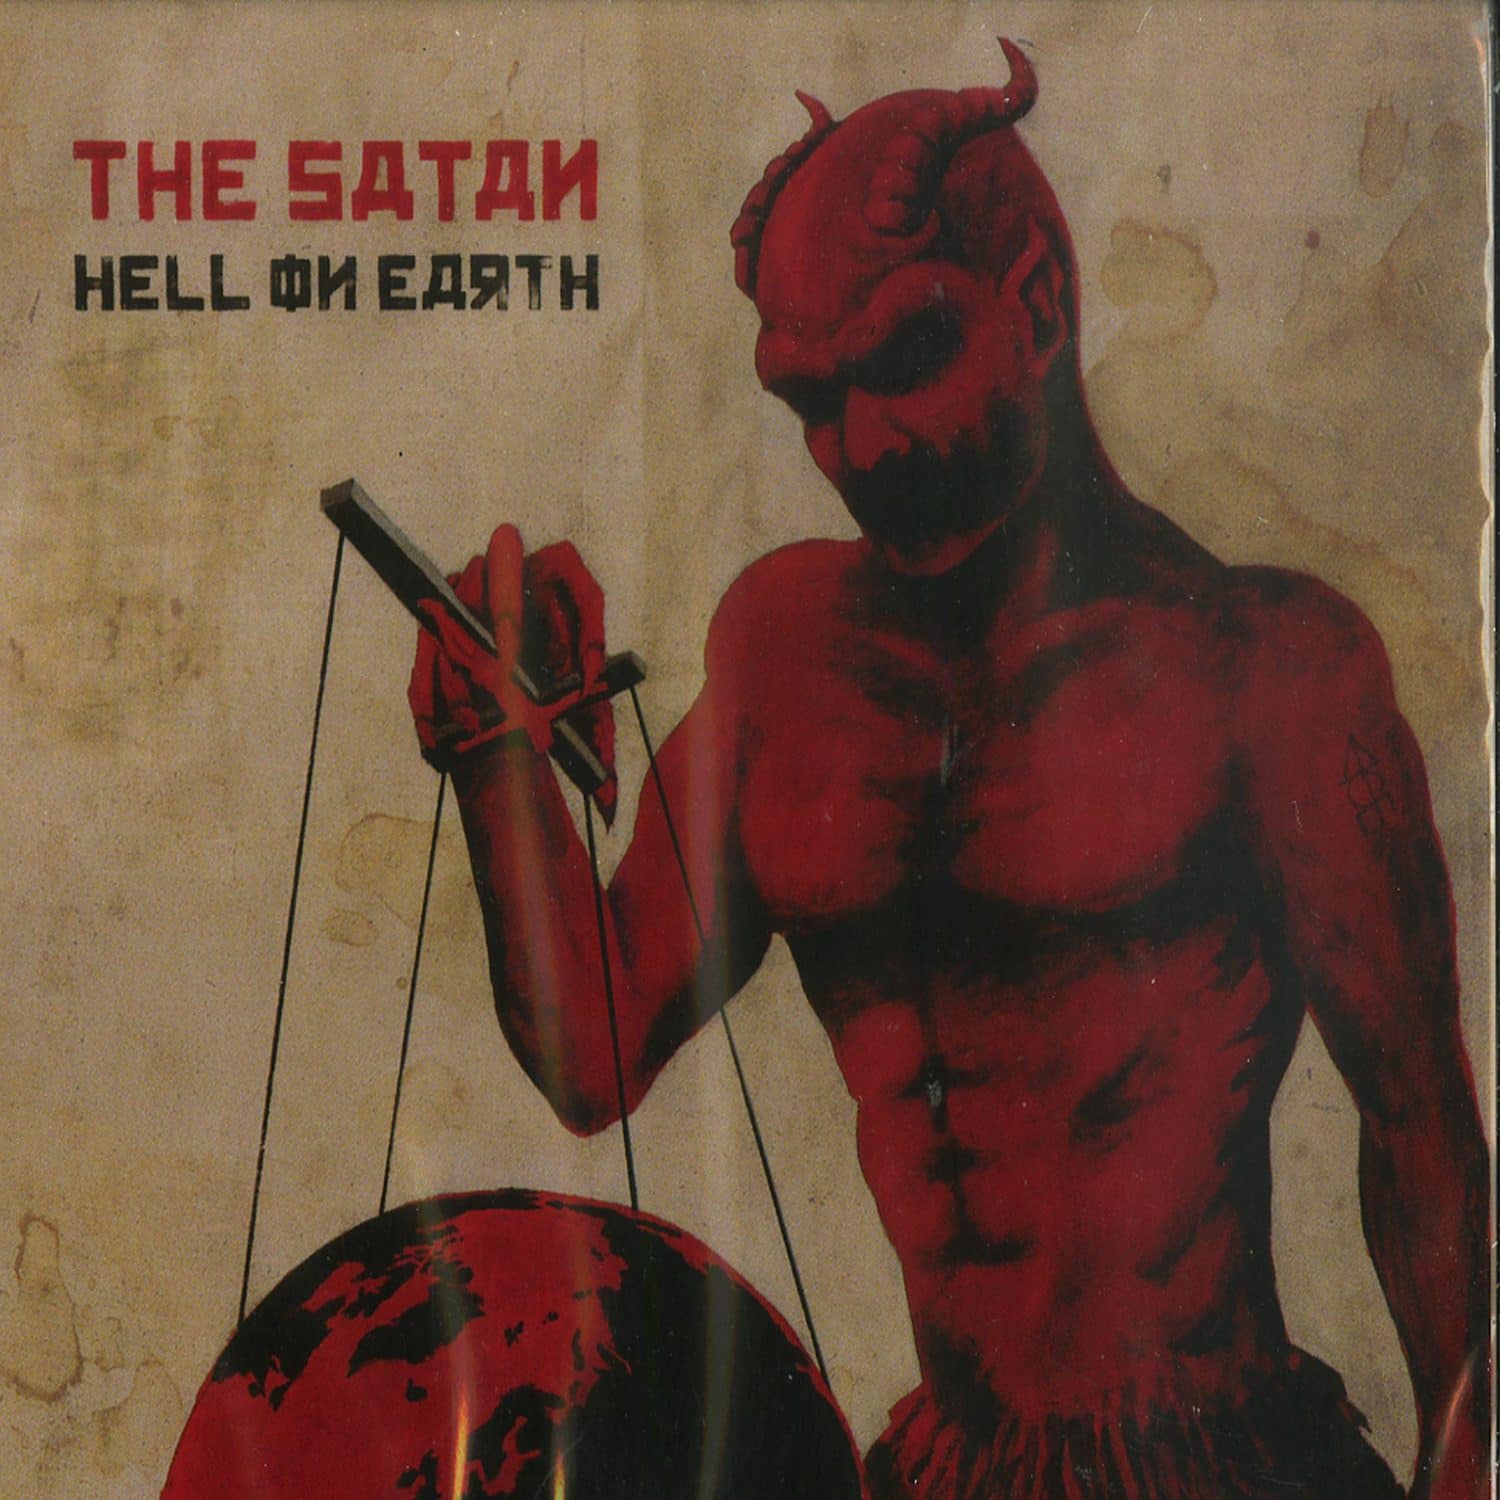 The Satan - HELL ON EARTH 